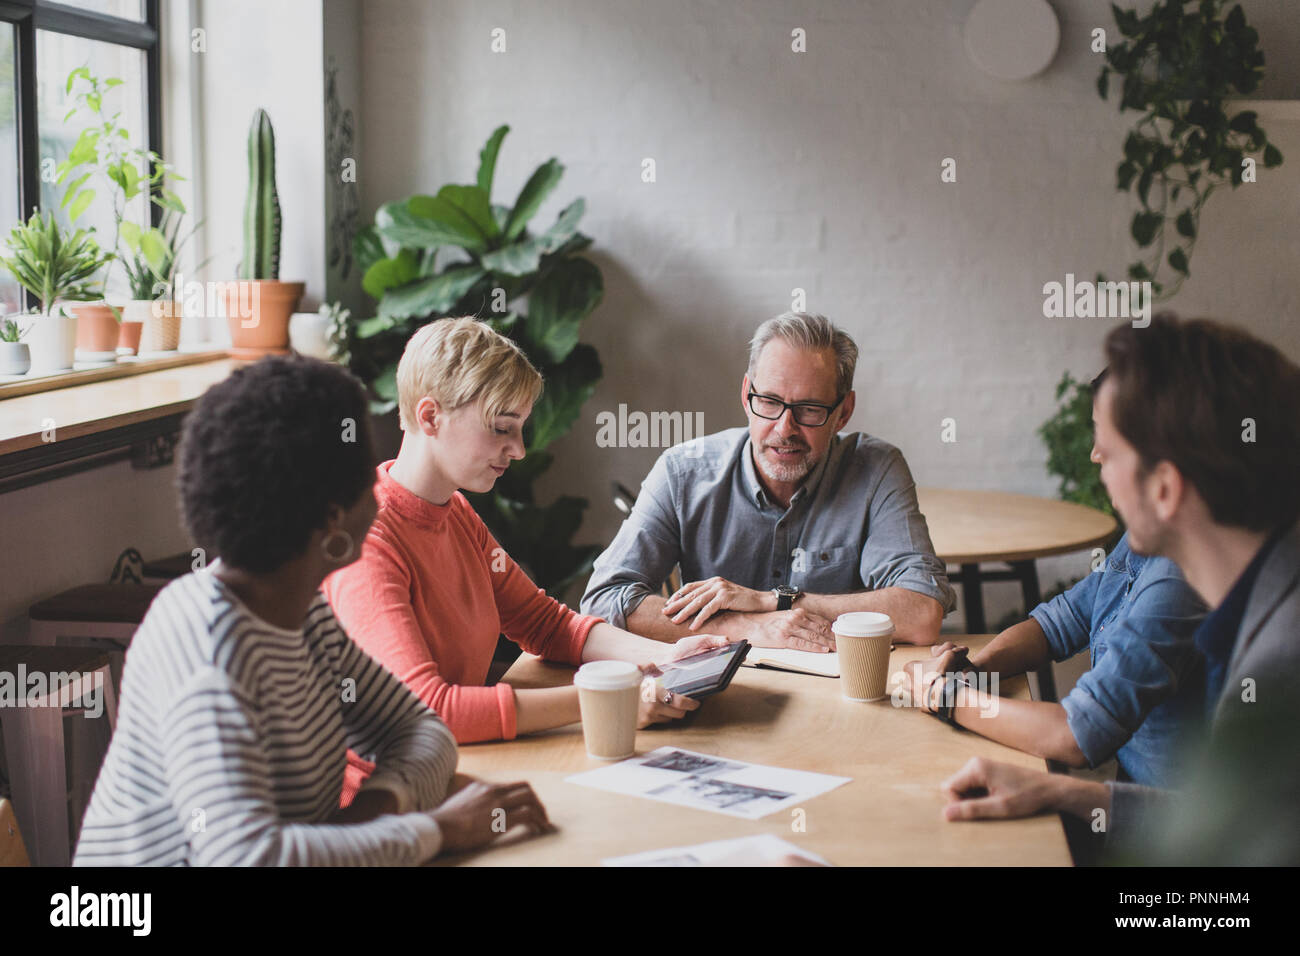 Junge Erwachsene das Geben einer Darstellung in einem business Meeting Stockfoto